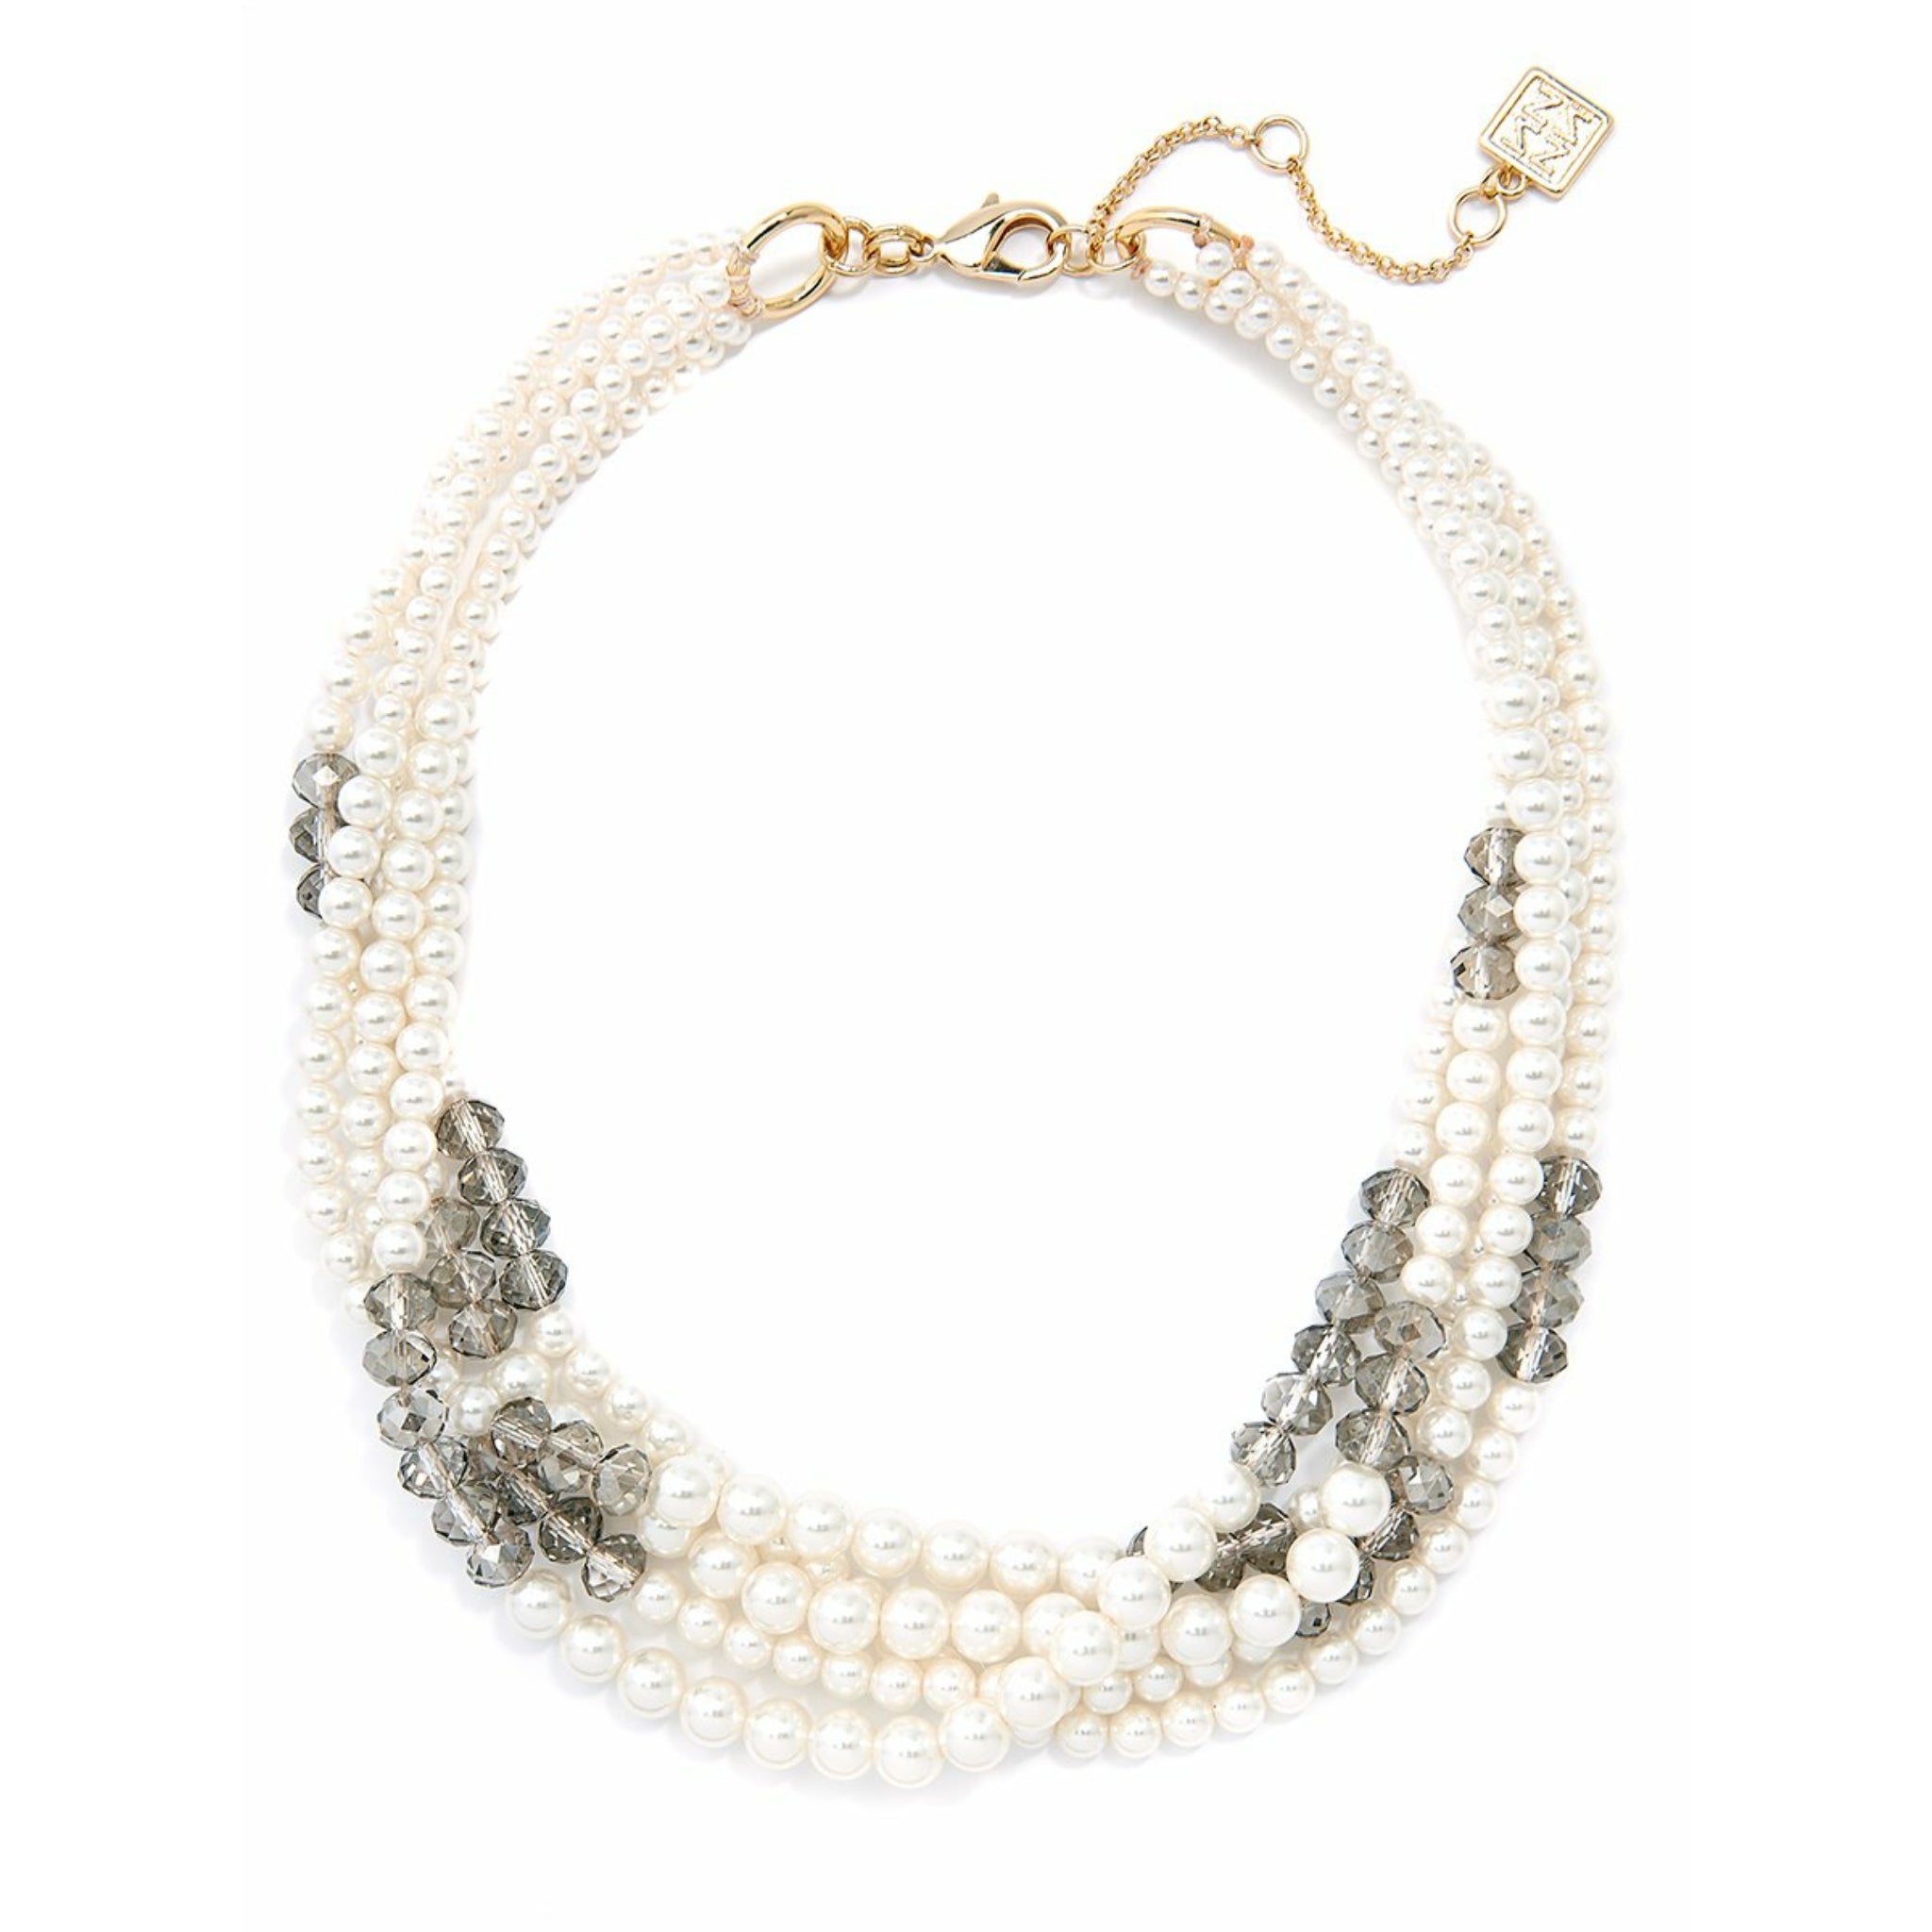 Pearls & Crystals Bib Necklace